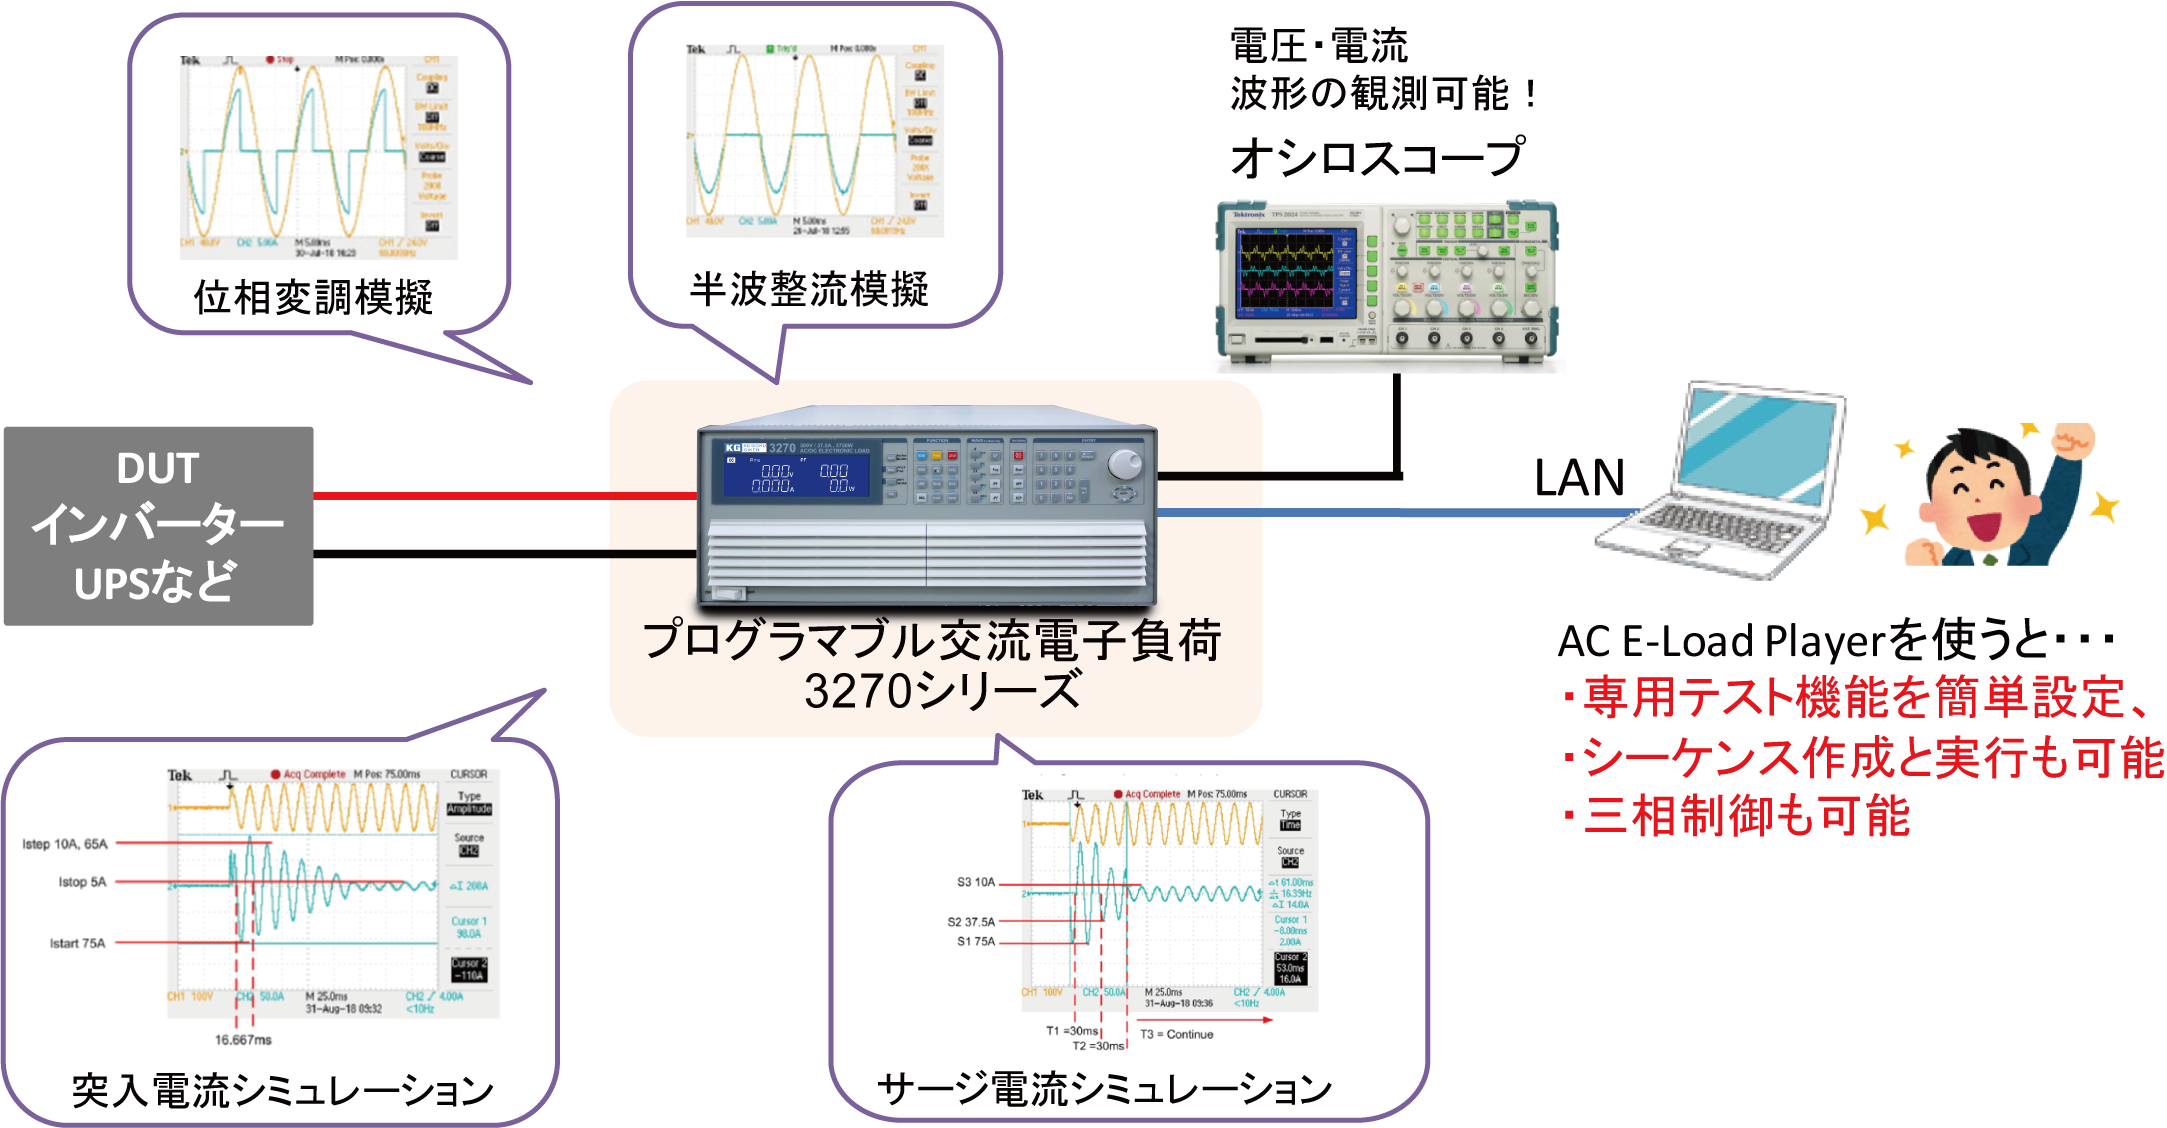 突入電流やサージ電流シミュレーション可能な交流電子負荷用アプリケーションソフトについて